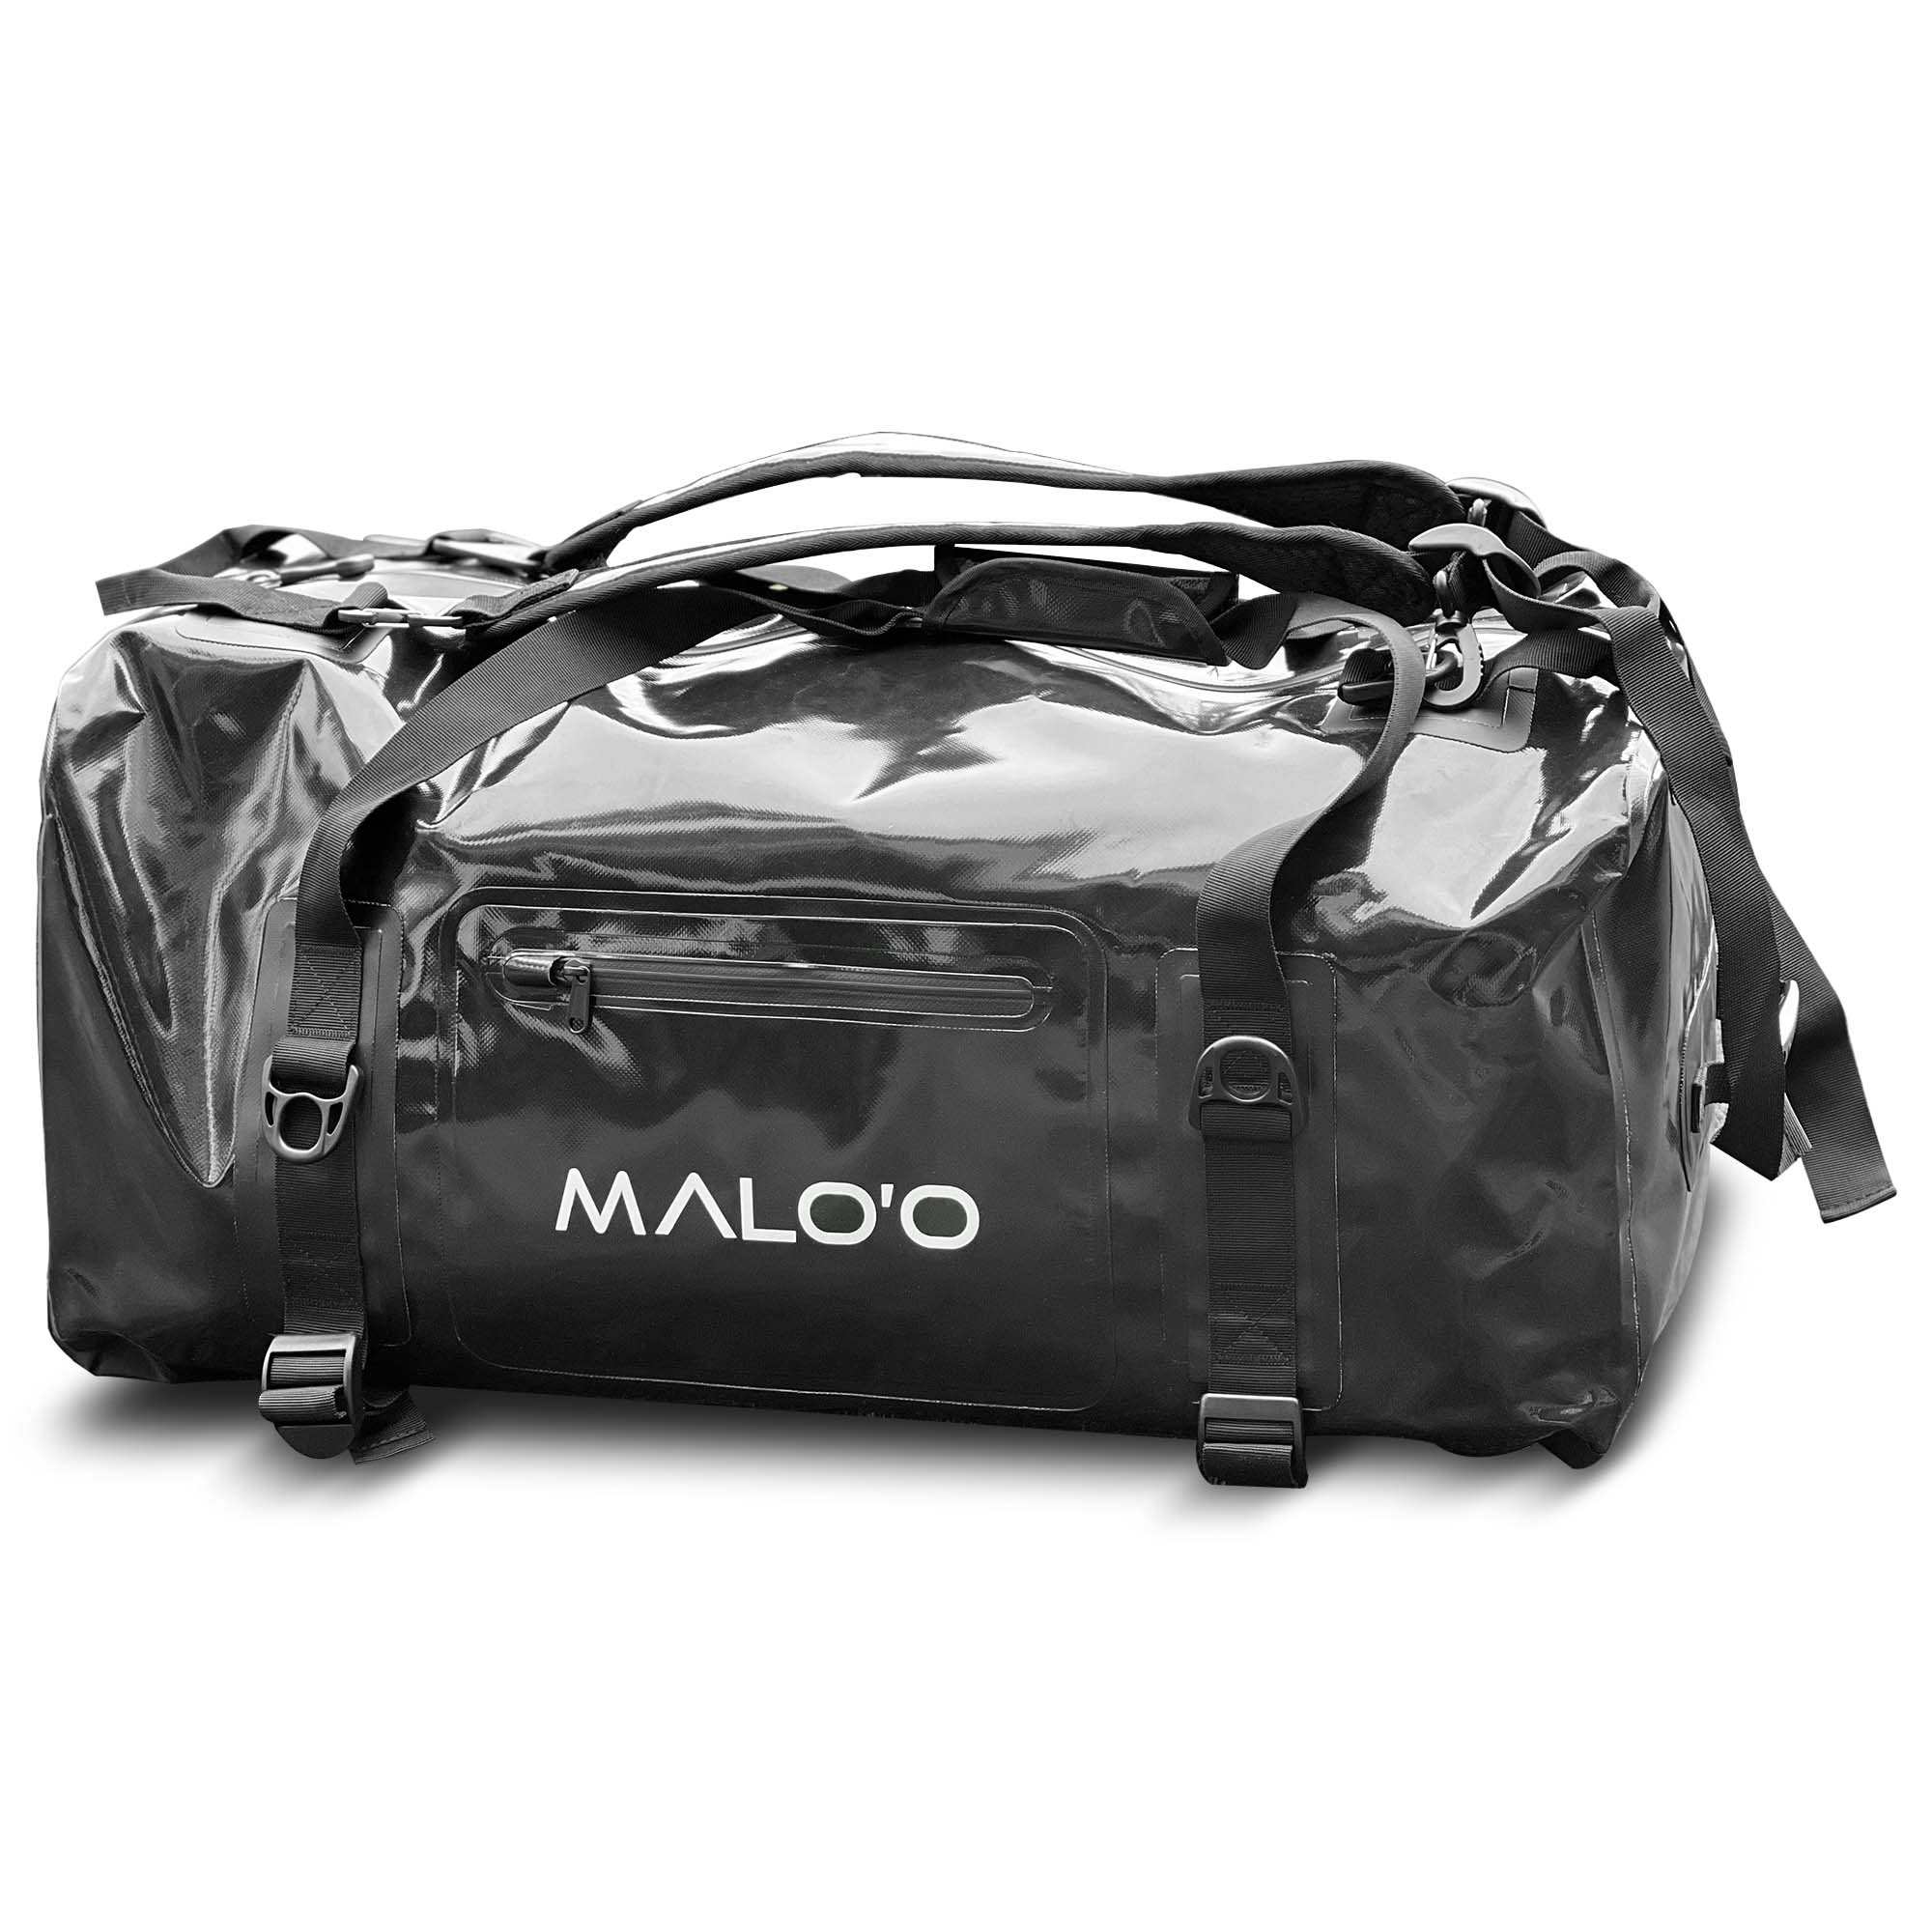 Malo'o Racks Black Malo'o DryPack Waterproof Backpack Duffle - 90L